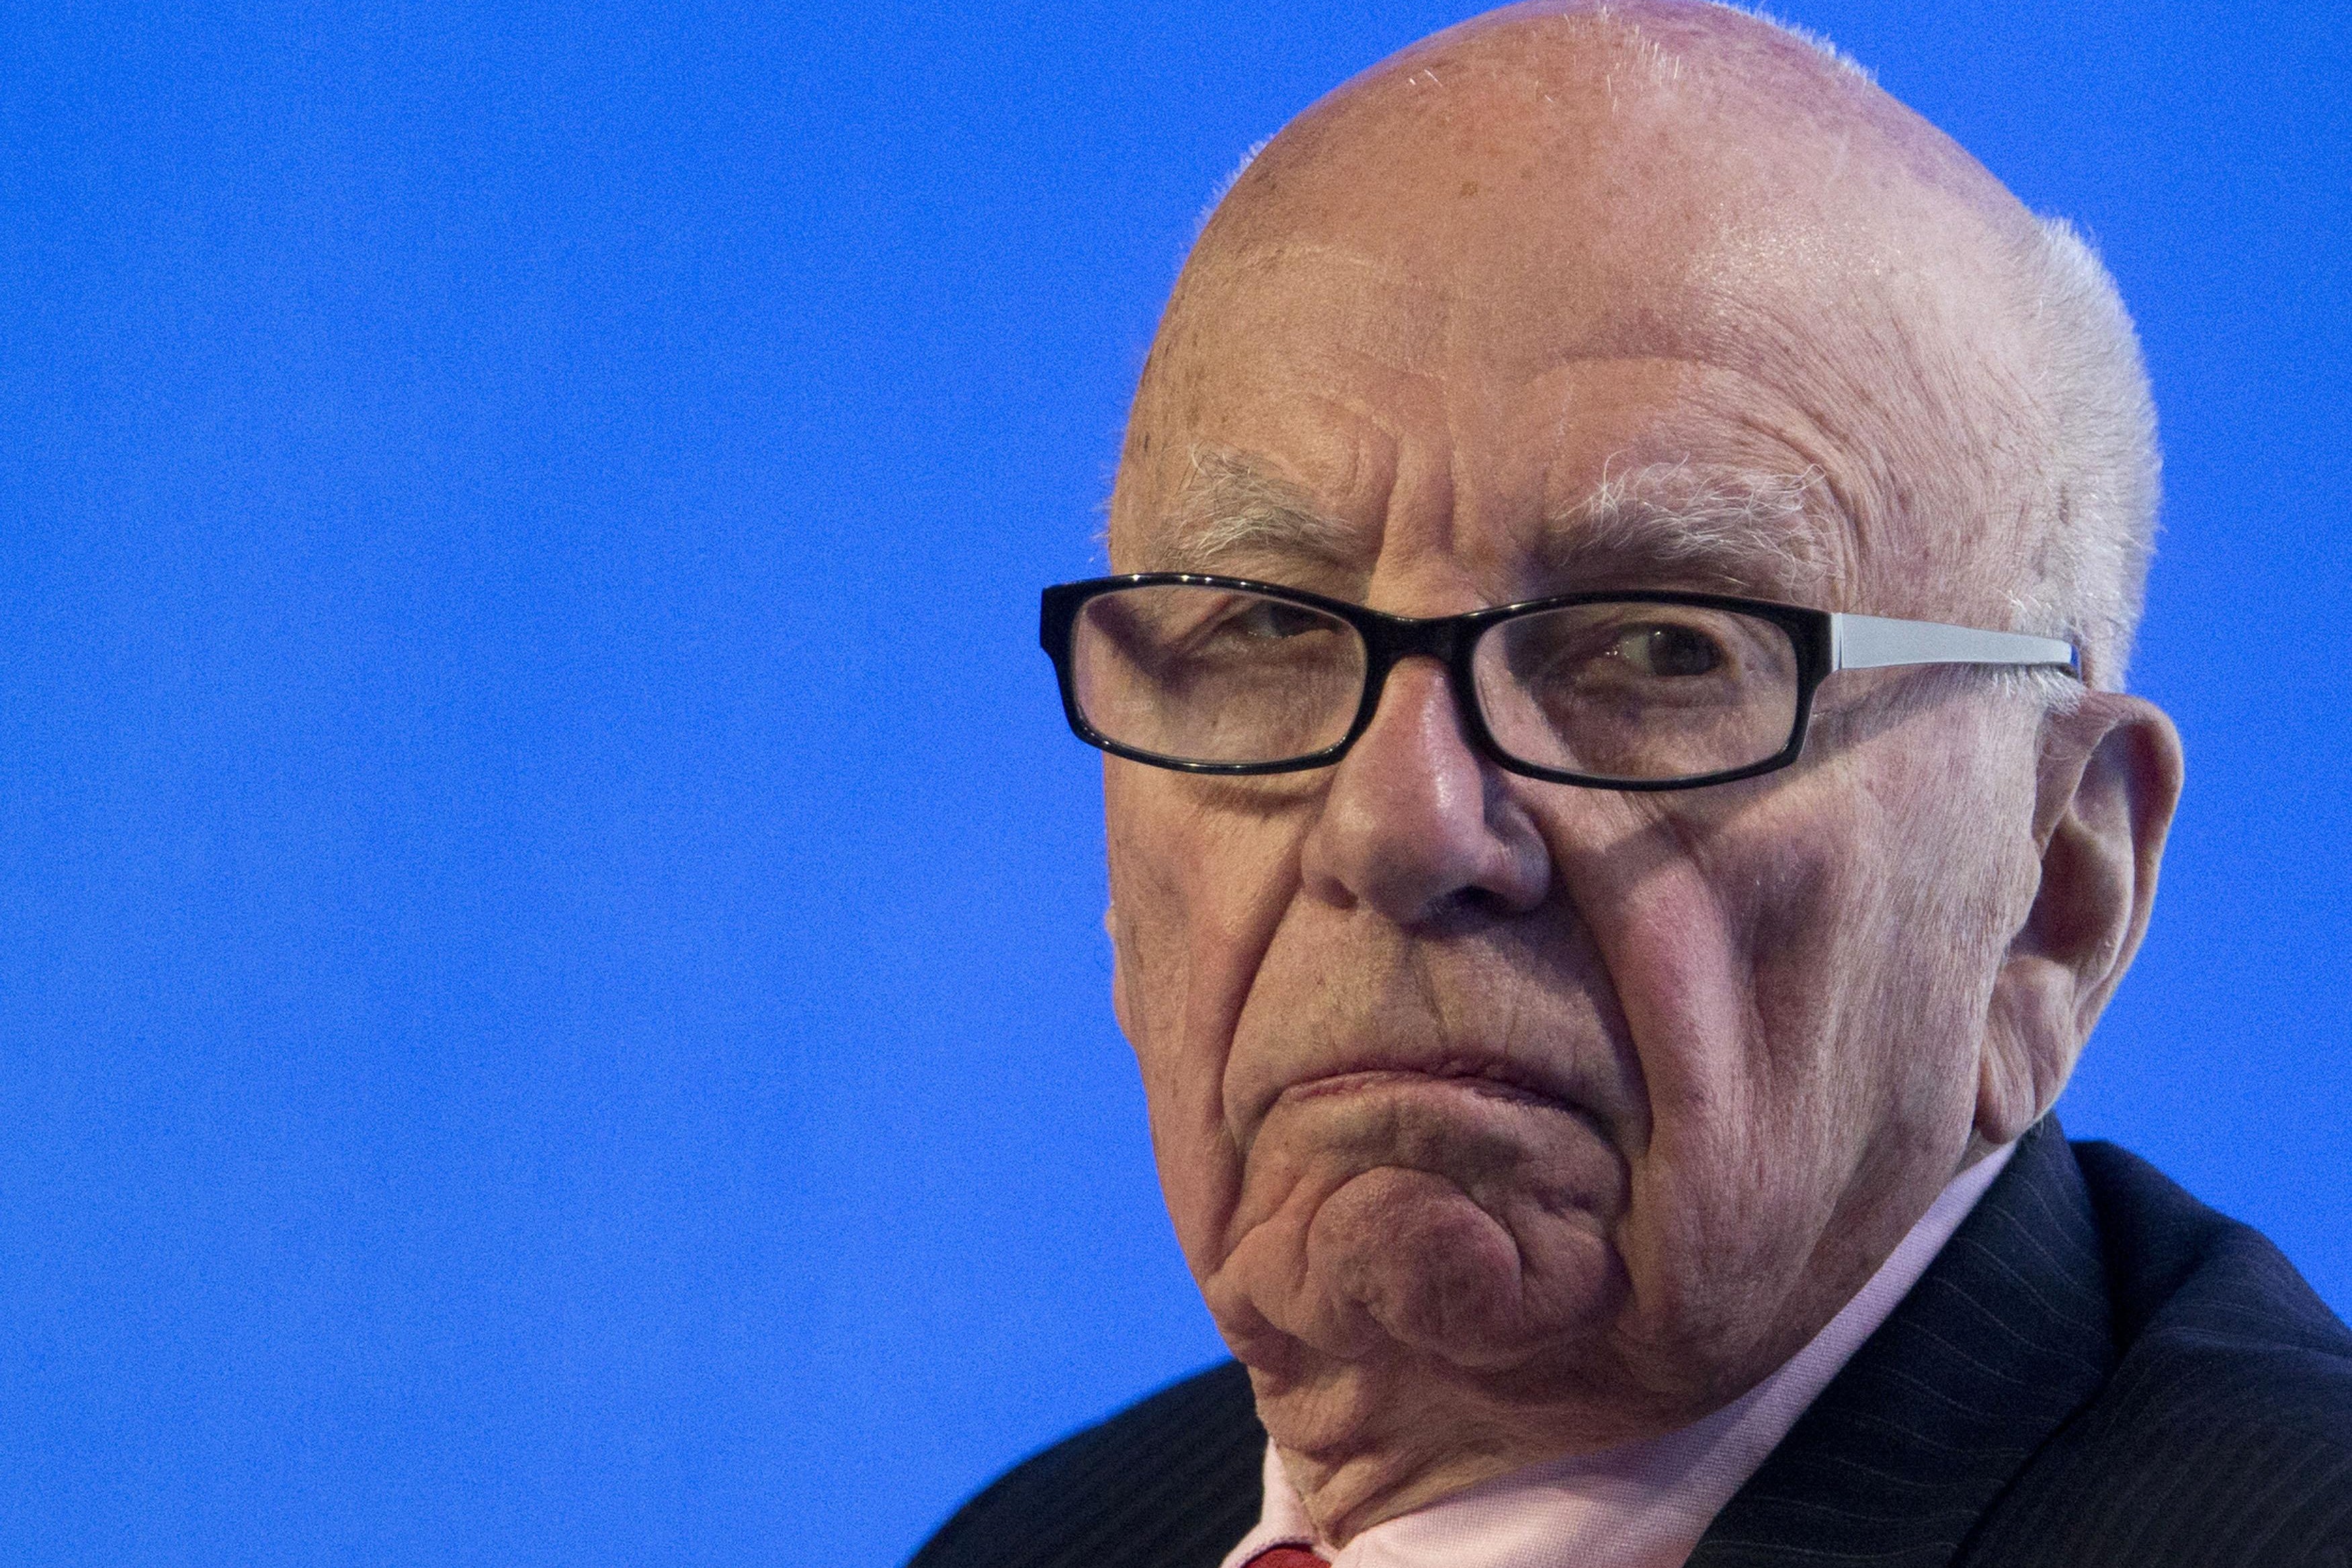 A close-up shot of Rupert Murdoch looking glum against a blue background.